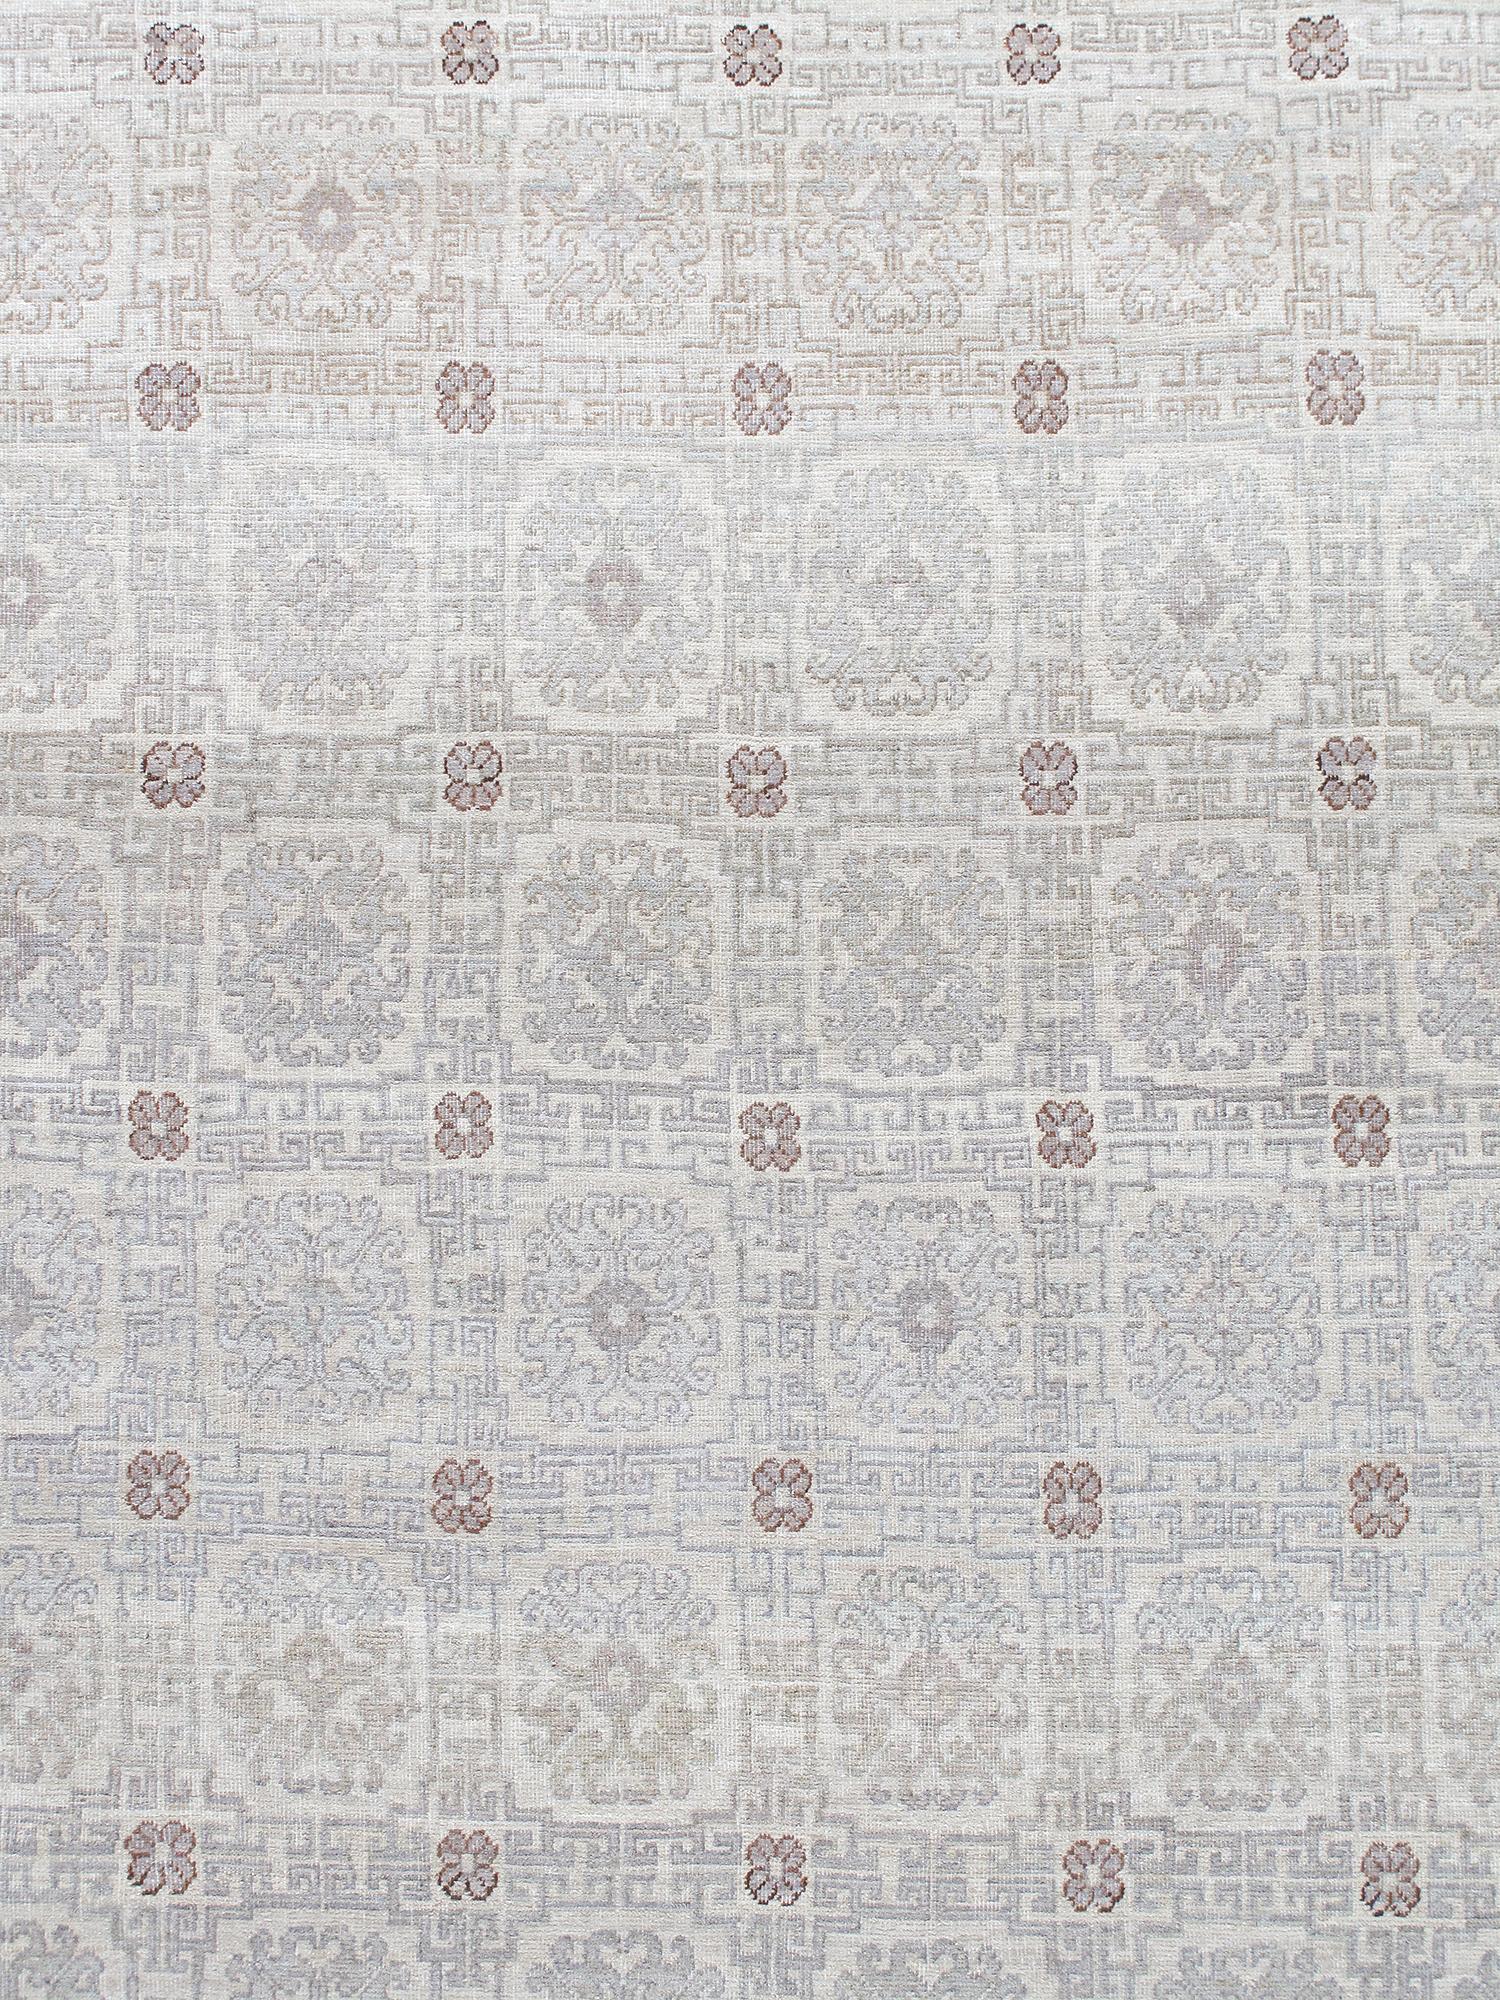 Khotan-Teppiche werden in Ostturkestan hergestellt und wegen ihrer Nähe zum gleichnamigen kulturellen Zentrum auch als Samarkand-Teppiche bezeichnet. Dieser Teppich wurde mit denselben alten Techniken aus handgesponnener persischer Wolle und